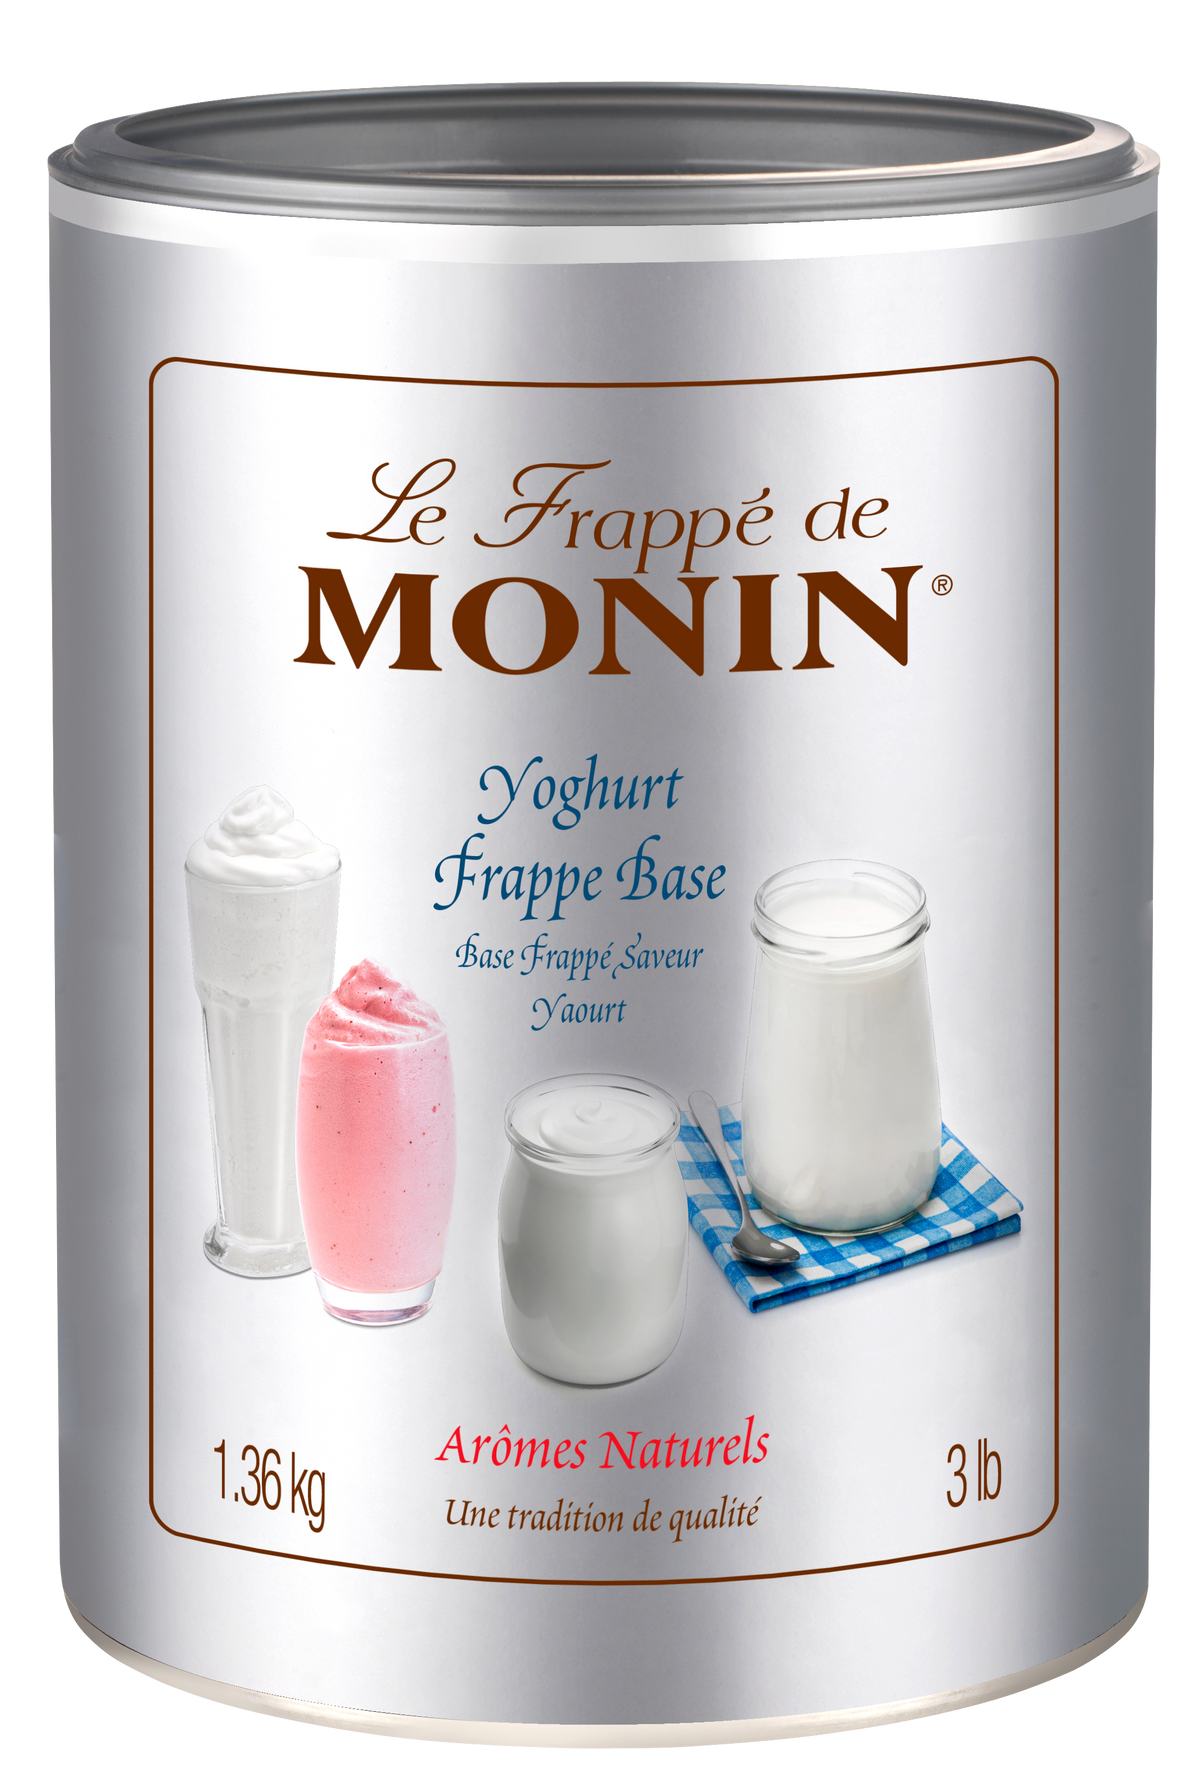 Le Frappé de MONIN Yogurt